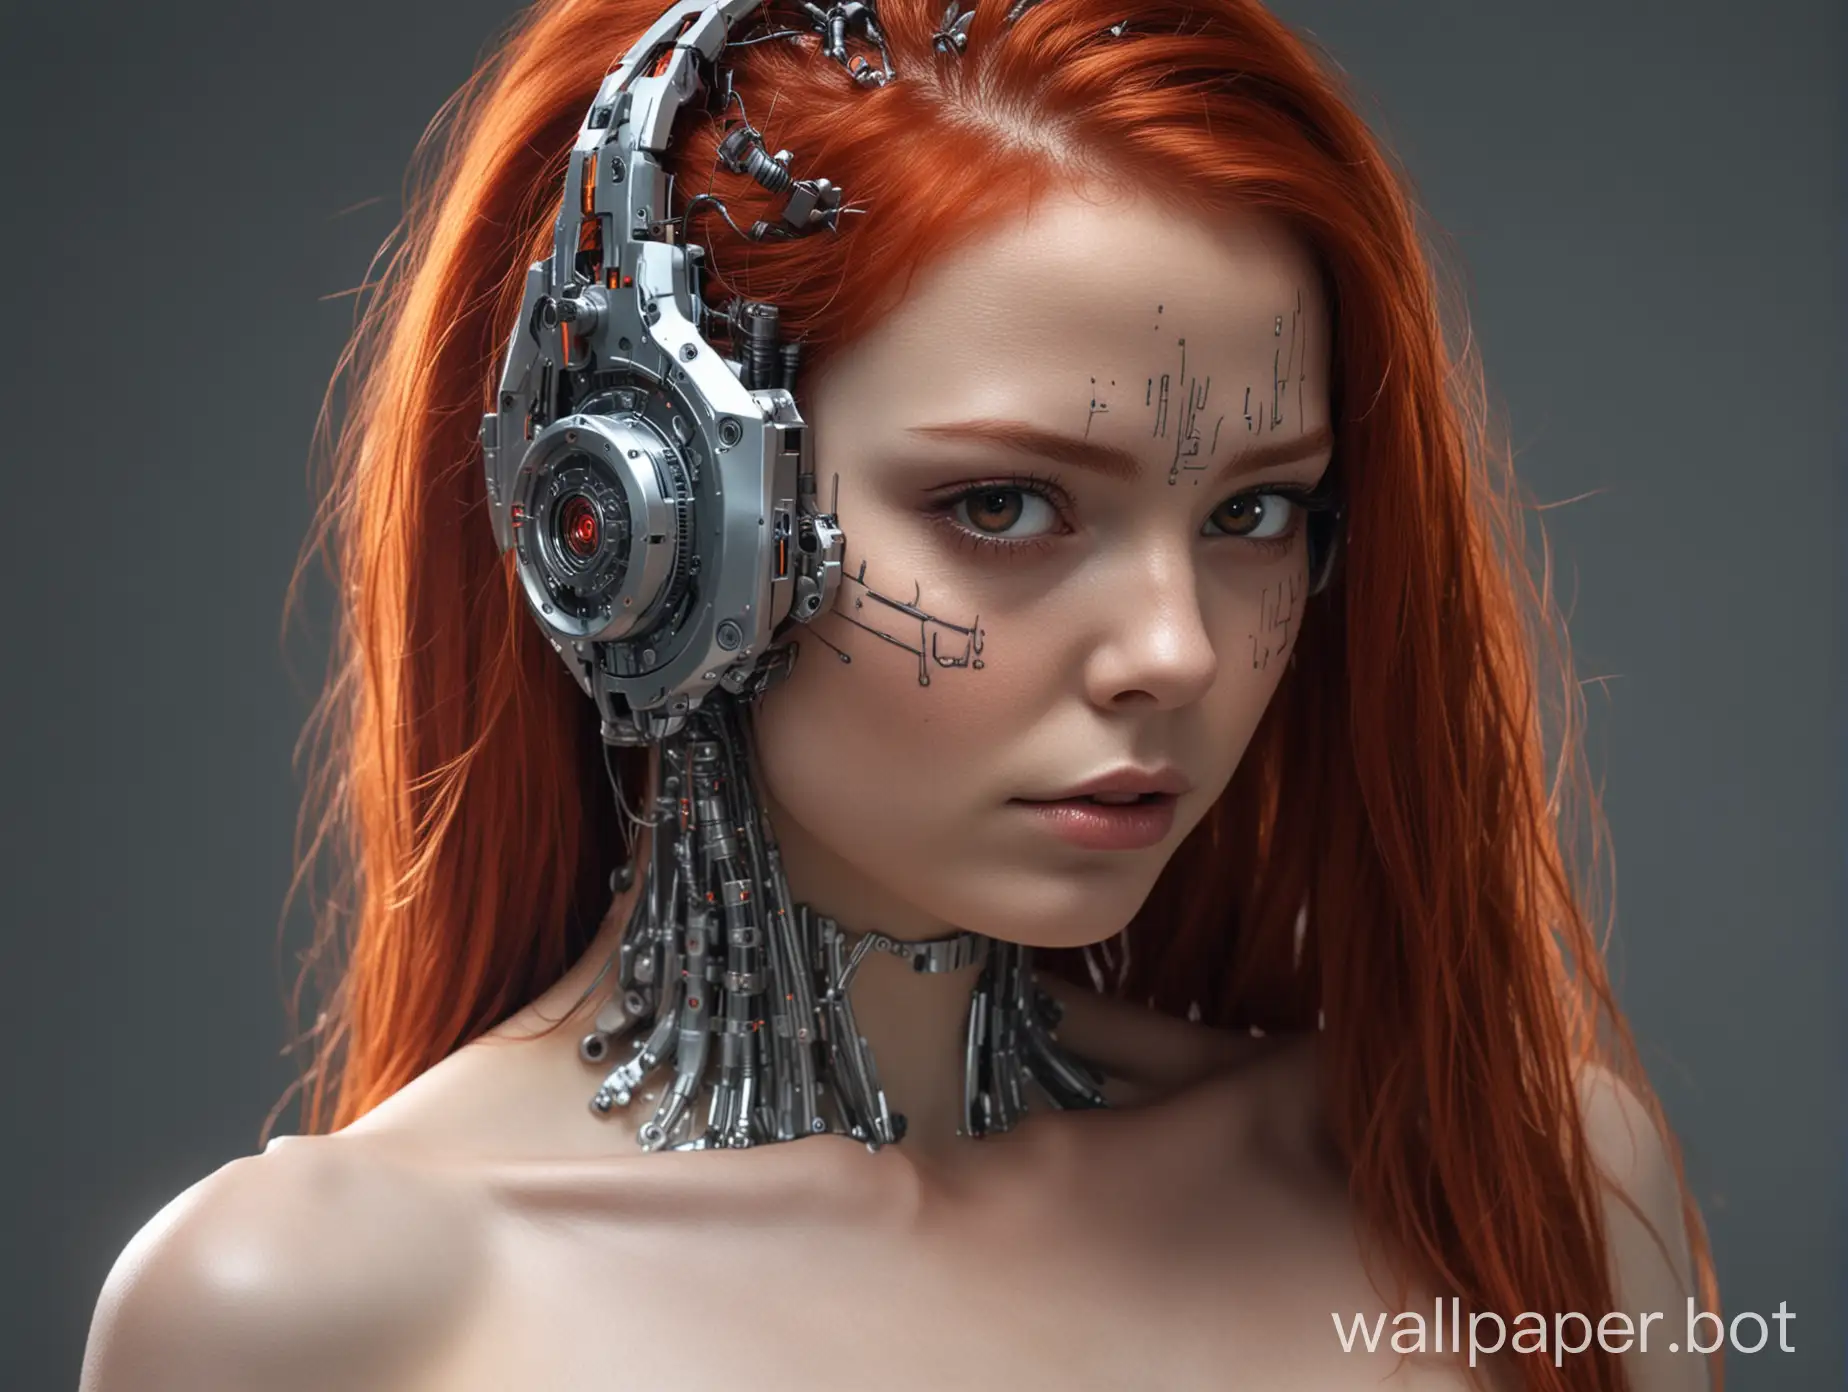 голая девушка киборг  стреляет лазером из глаз, кибер импланты по всему телу, длинные огненно рыжие волосы развиваются, в полный рост, вид с боку